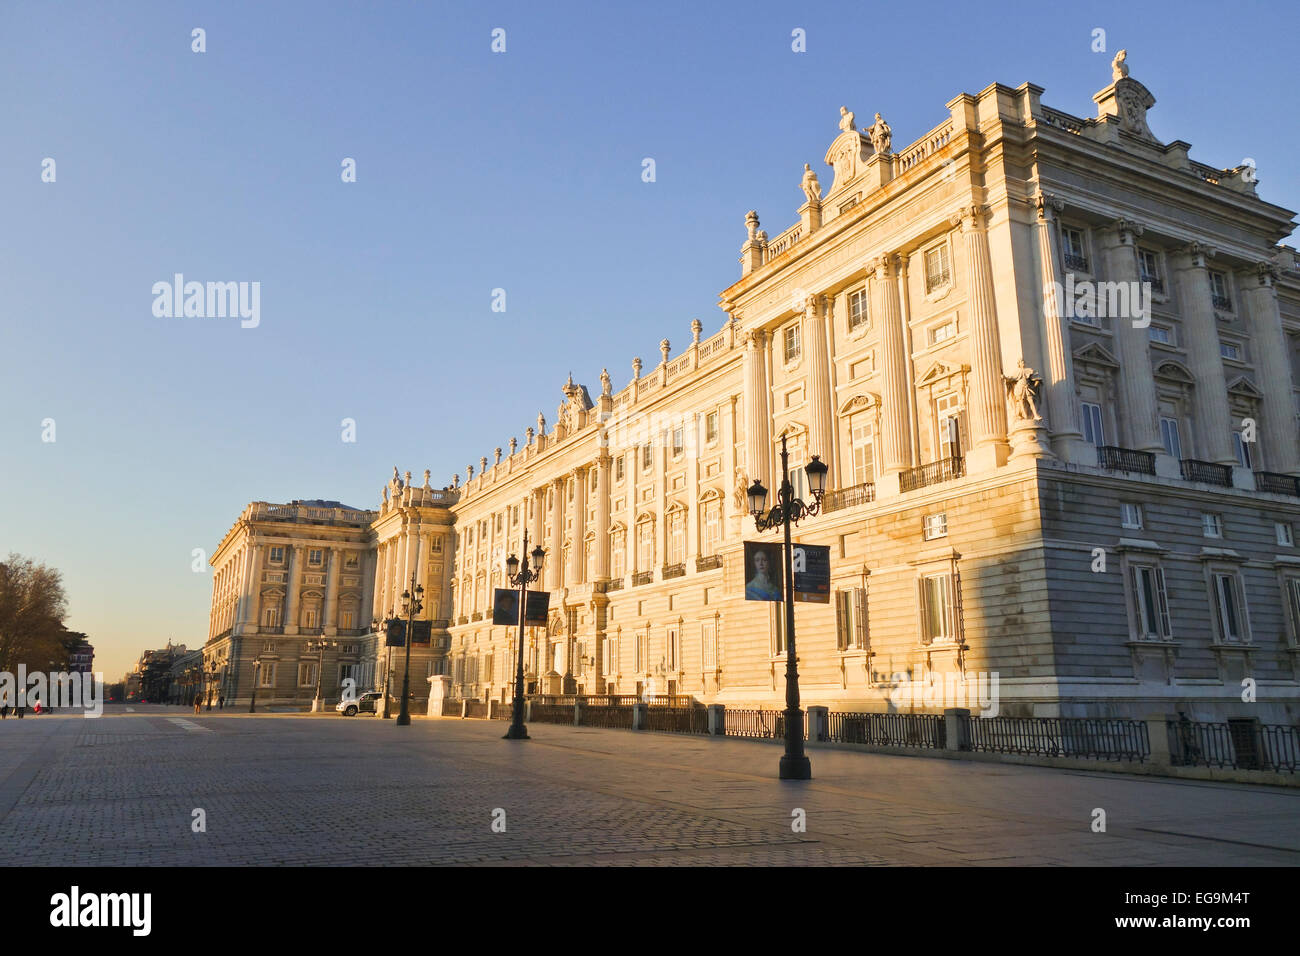 Palacio Real de Madrid, Ost Fassade, Königspalast, offizielle Residenz des spanischen Königshauses, Madrid, Spanien. Stockfoto